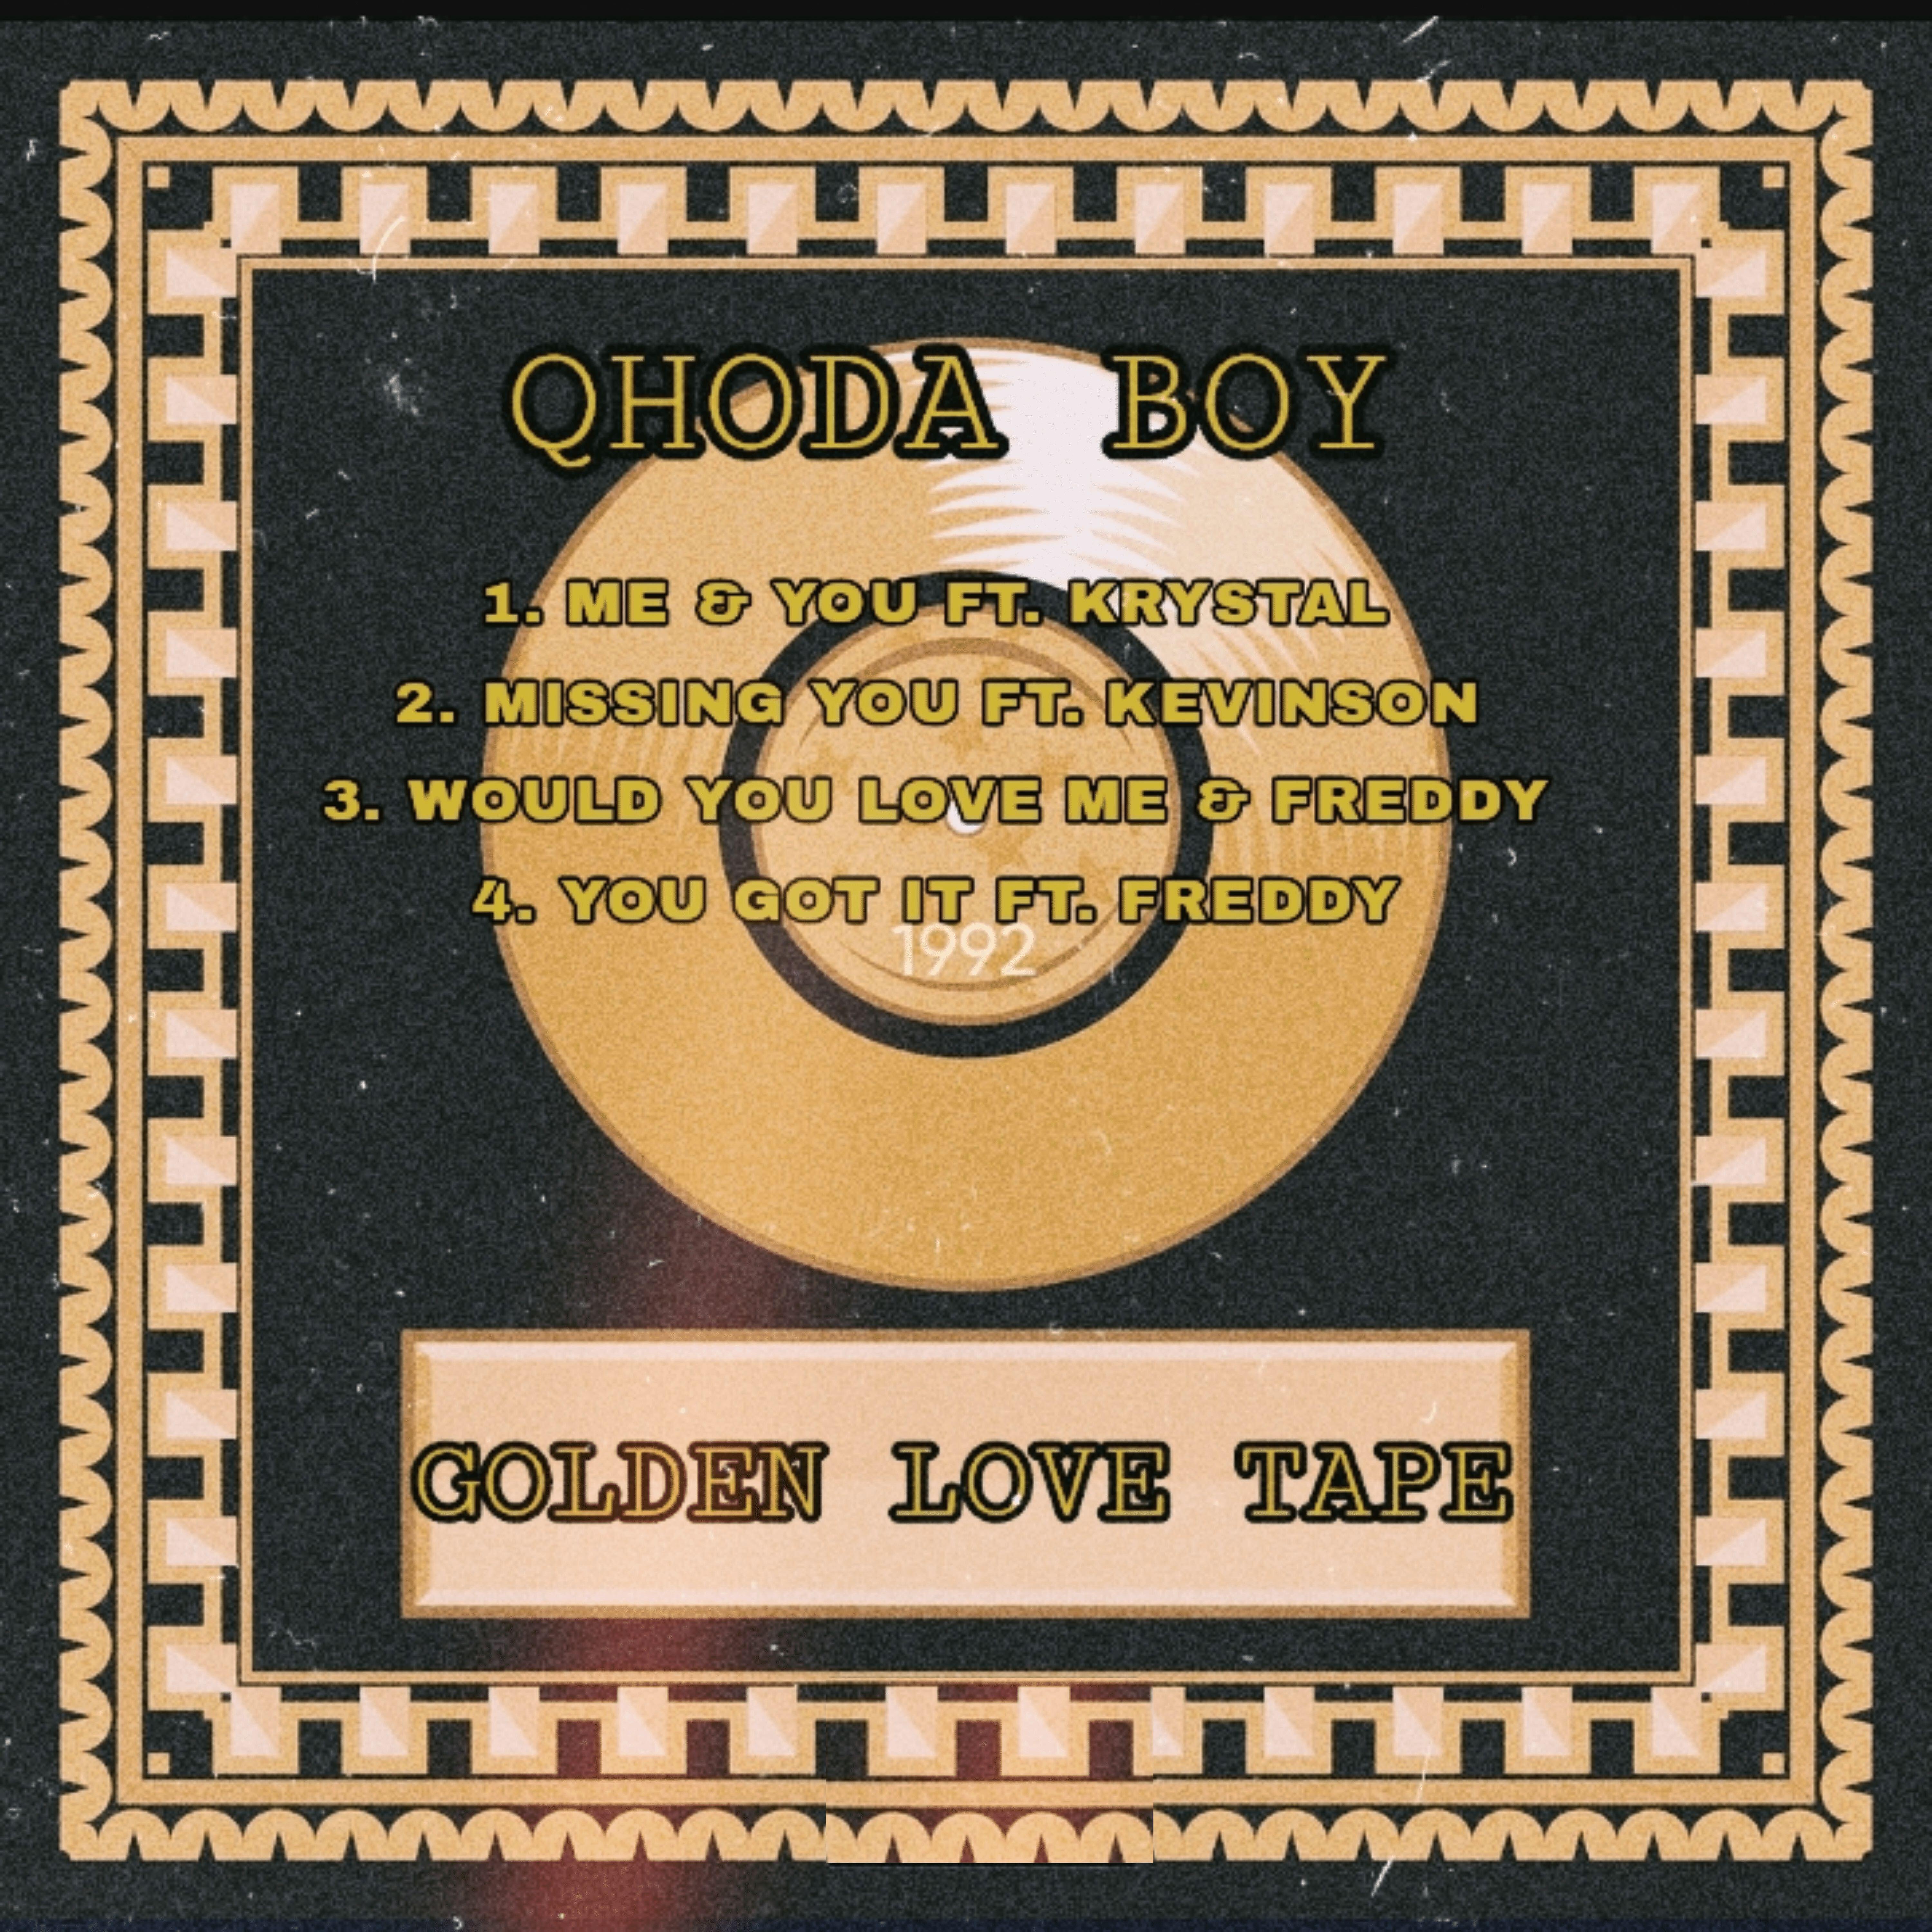 Qhoda Boy - You Got It